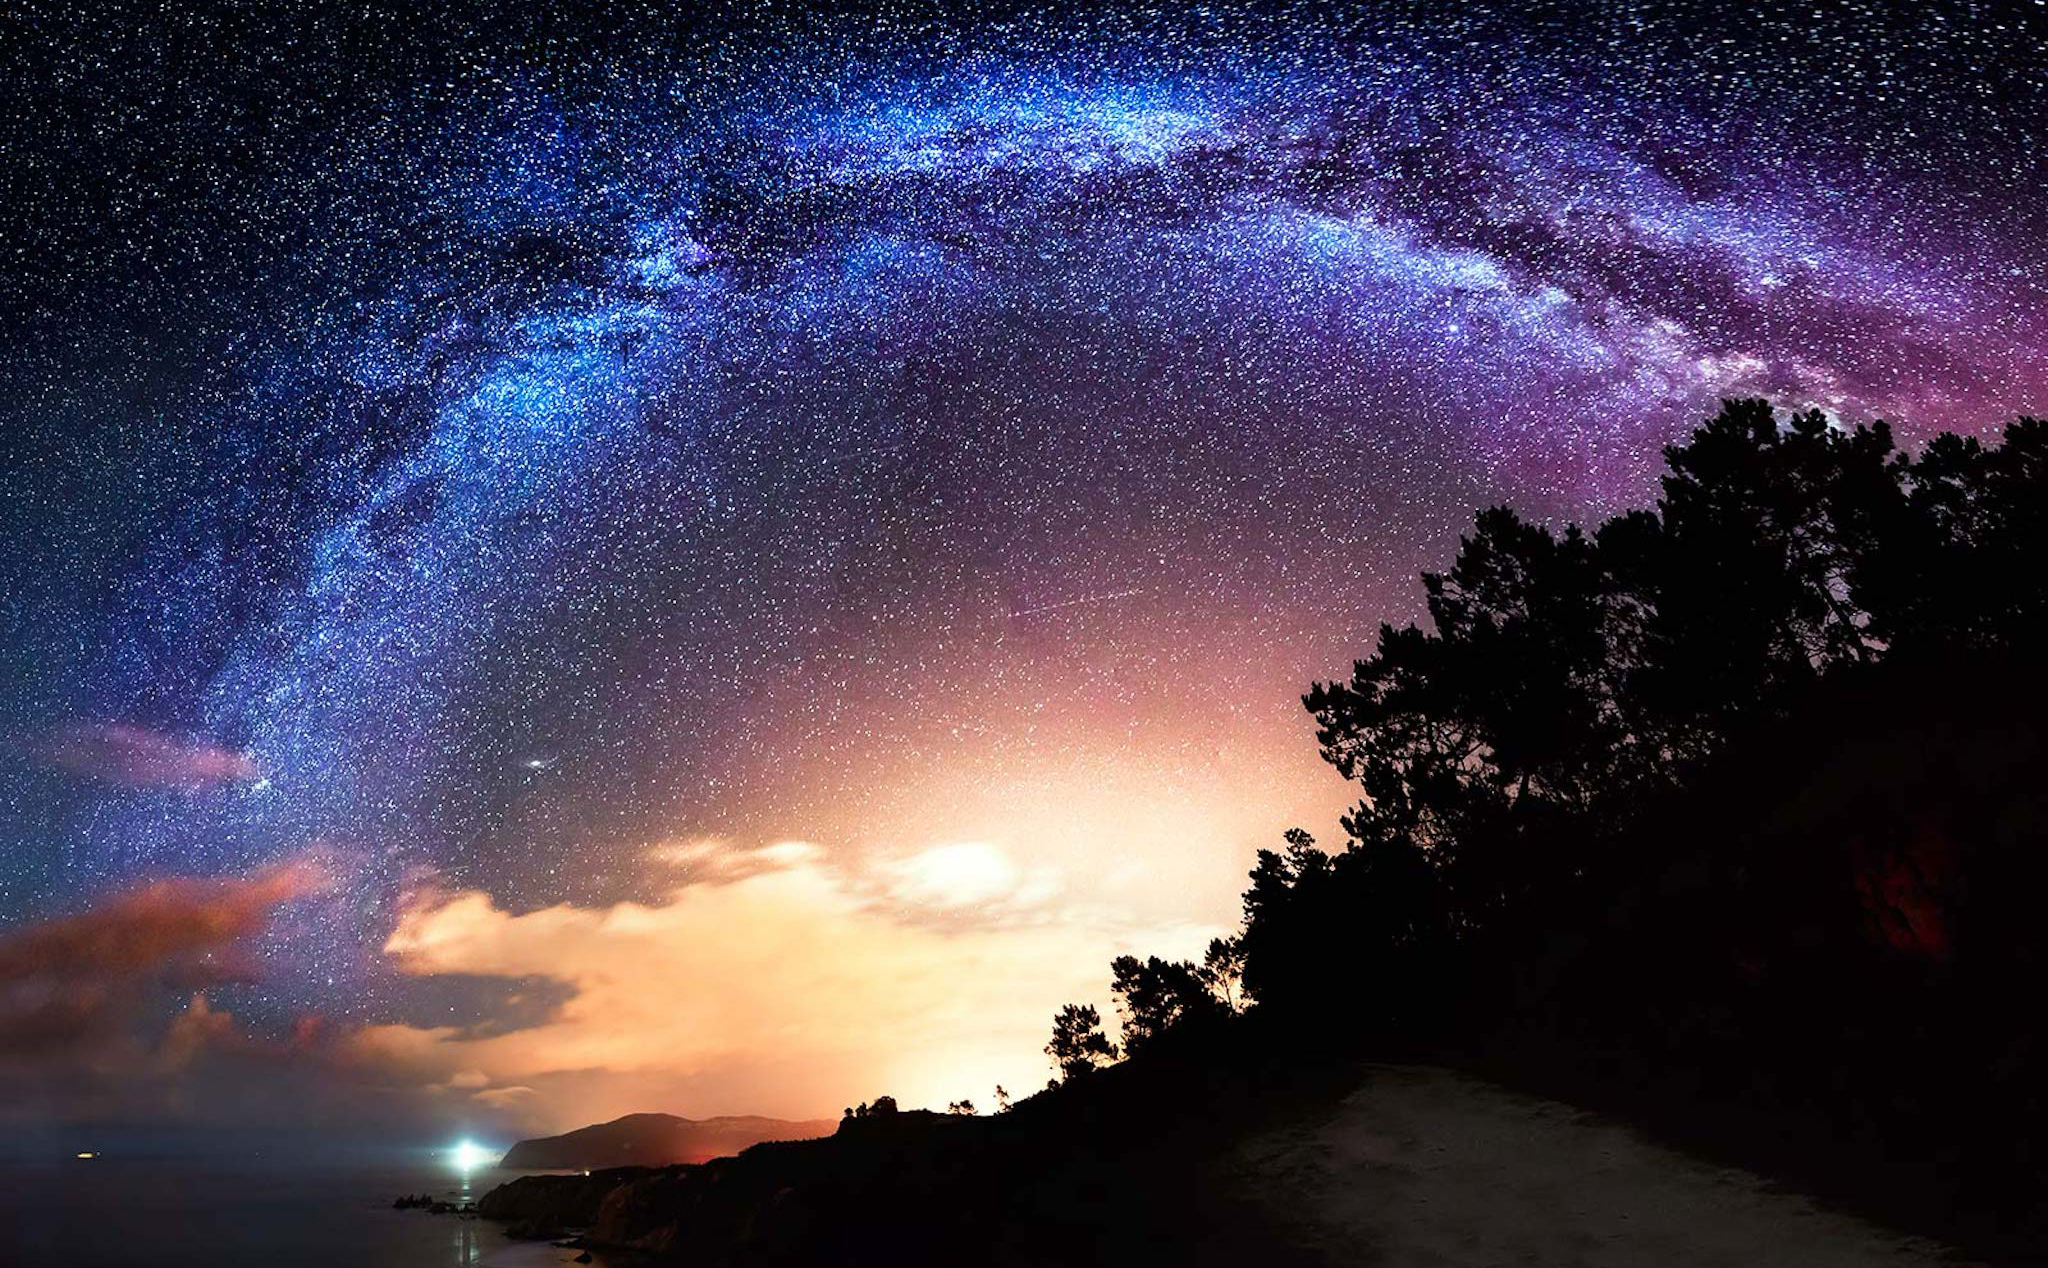 Ngắm sao đẹp - ai cũng từng có những tháng năm “tìm vì sao, mỗi buổi tối” và cảm nhận được sự thật sự kỳ diệu của vũ trụ. Bạn sẽ cảm thấy hạnh phúc và thảnh thơi khi được ngắm nhìn bức ảnh về viễn cảnh sao trên bầu trời.